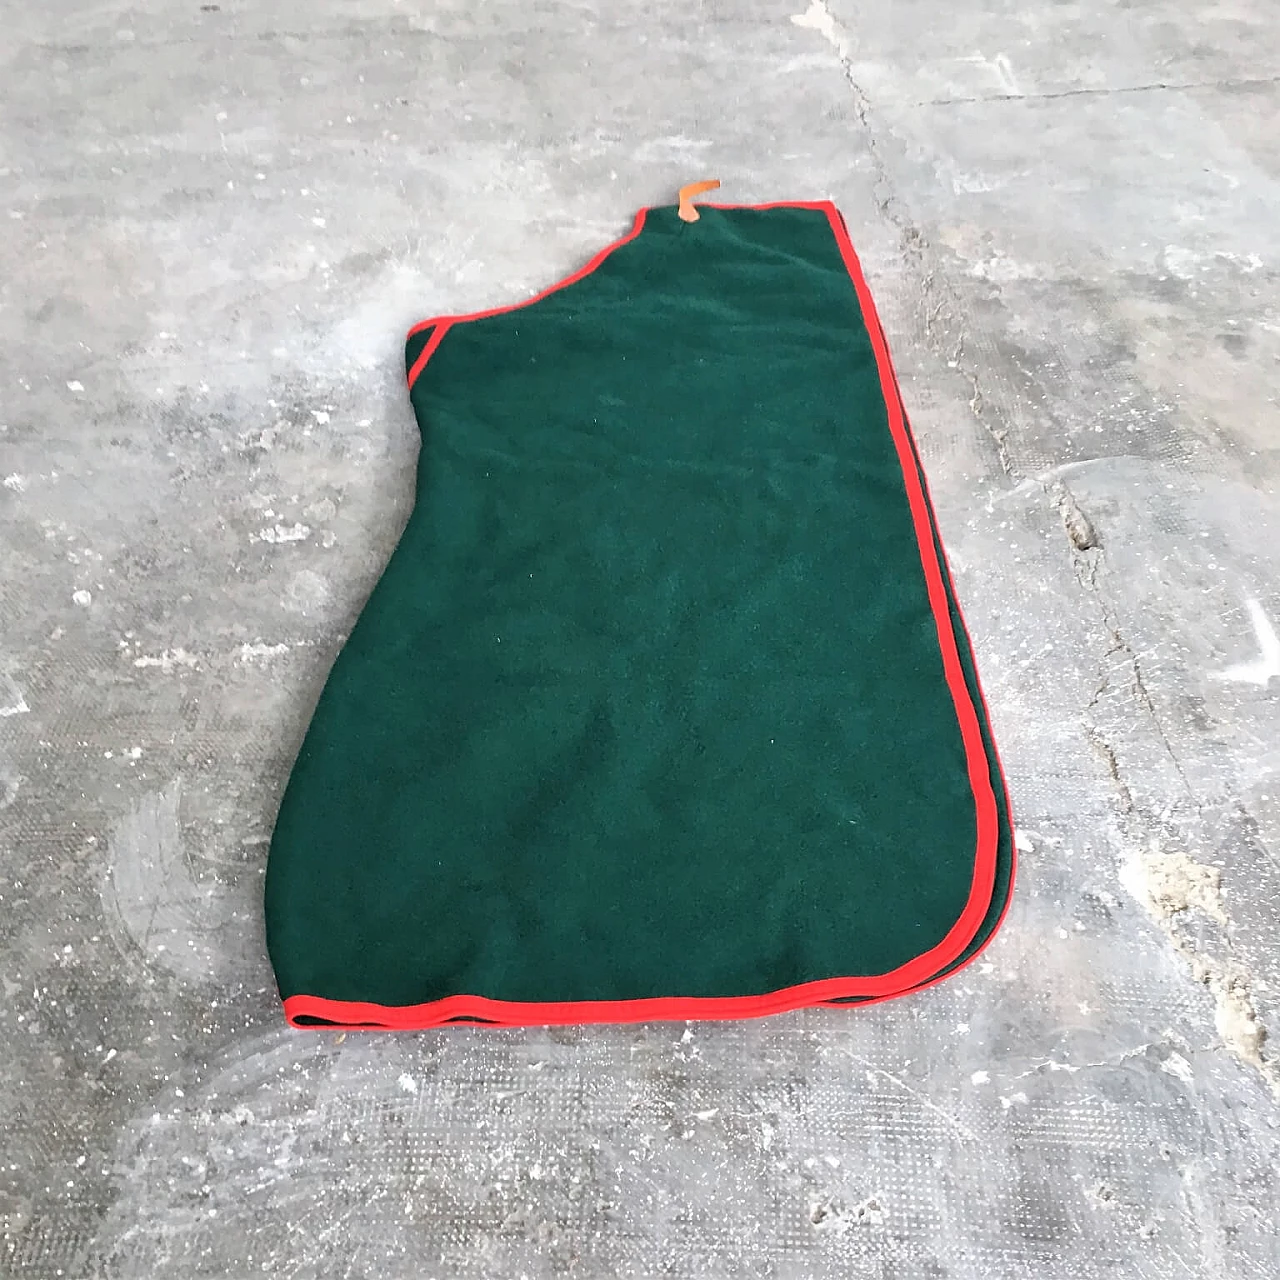 Coperta verde Selleria Pariani, realizzata a mano, pura lana vergine, profili rossi e cuoio, 1980 1071706